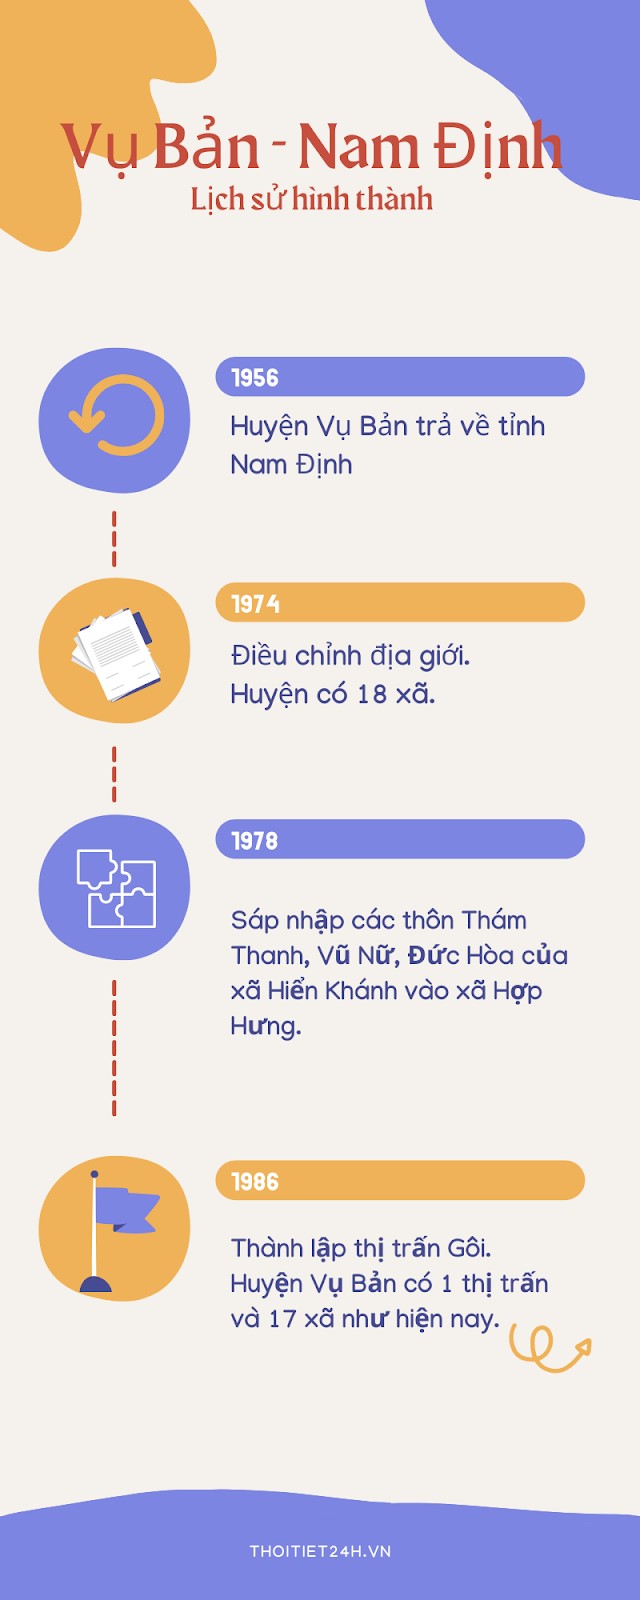 Lịch sử hình thành Vụ Bản - Nam Định